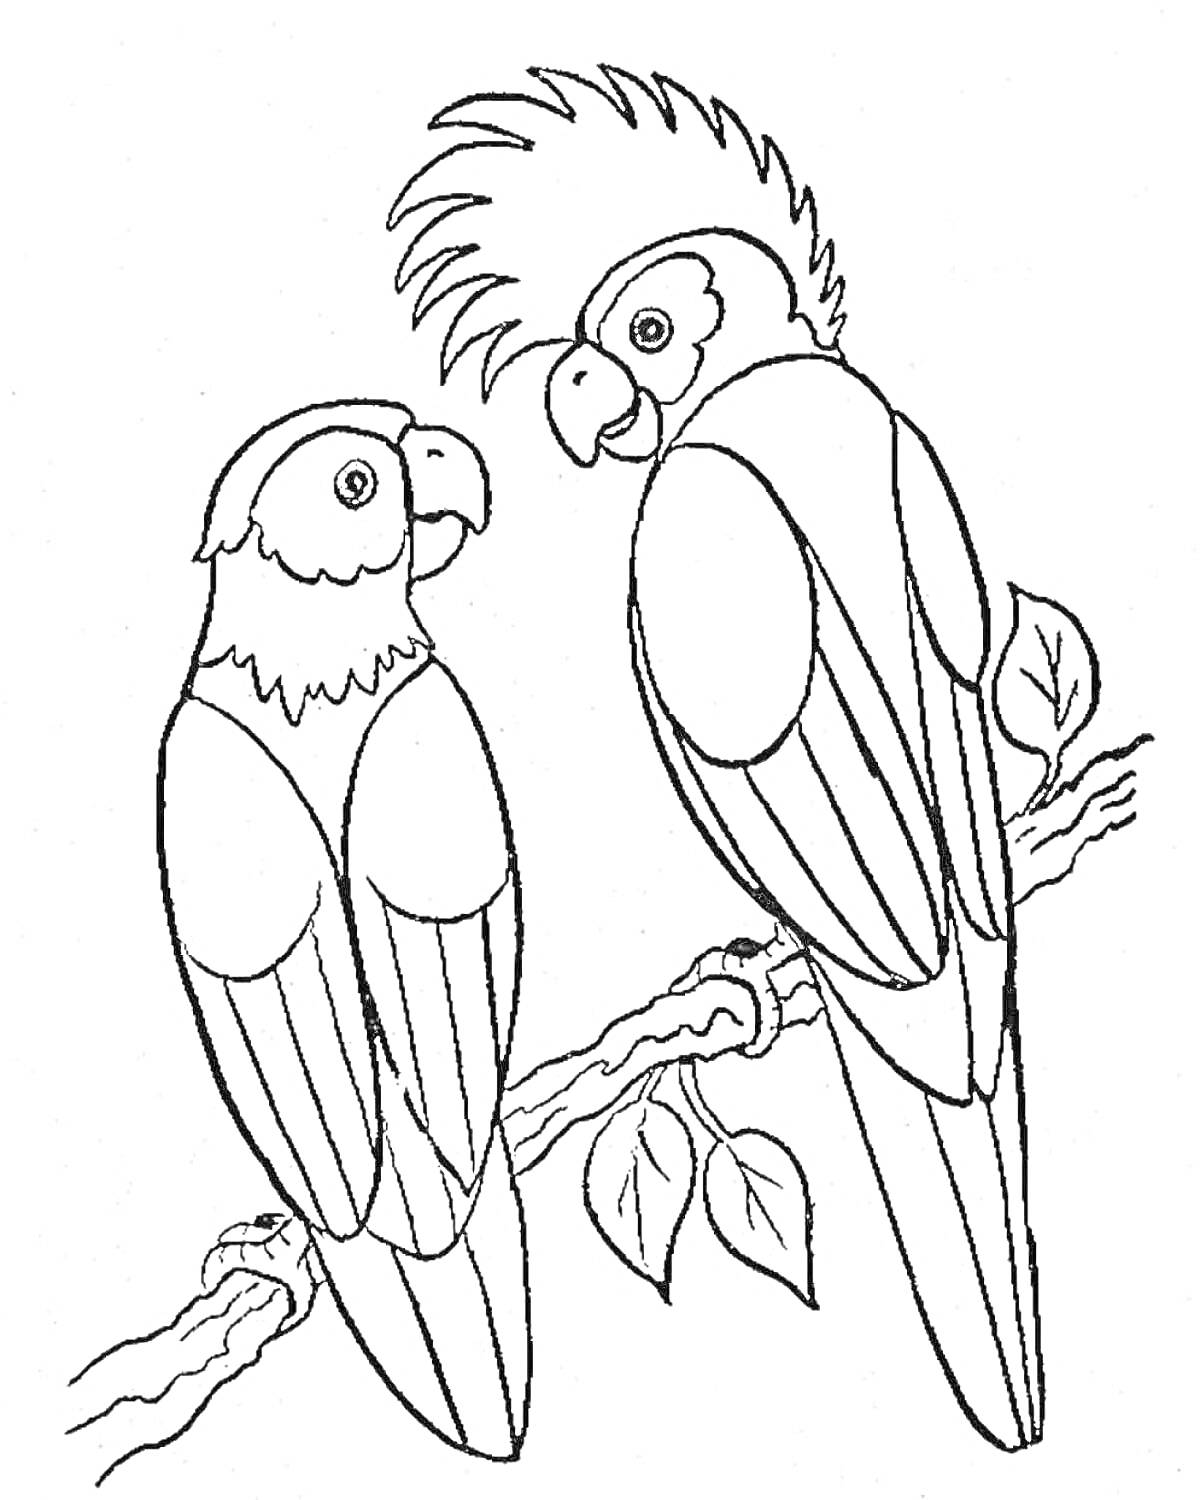 Два попугая на ветке с листьями